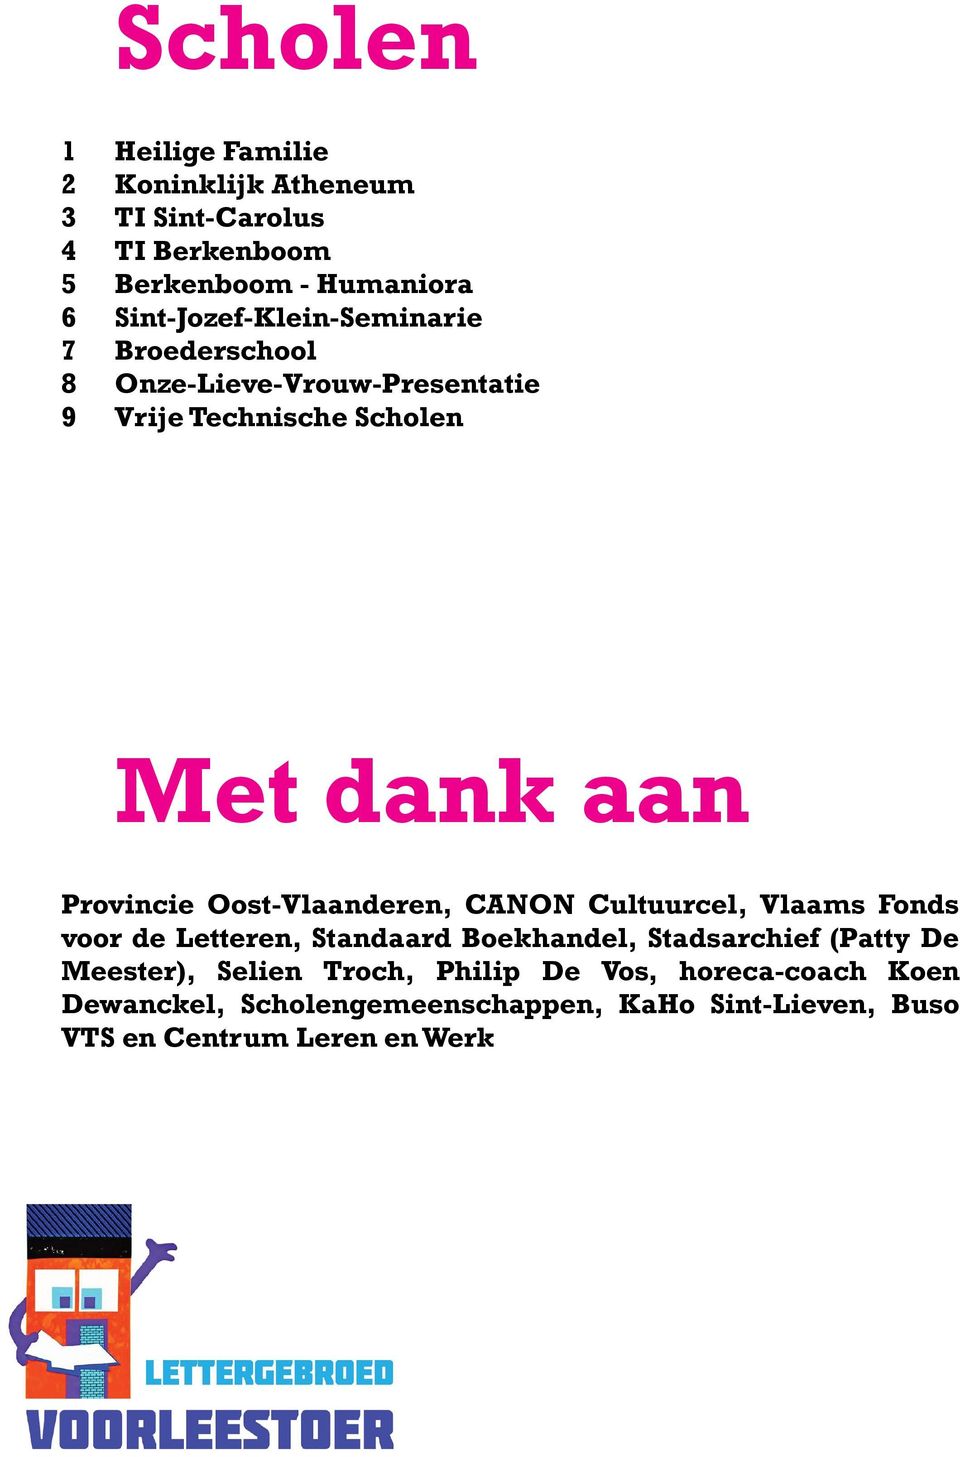 Provincie Oost-Vlaanderen, CANON Cultuurcel, Vlaams Fonds voor de Letteren, Standaard Boekhandel, Stadsarchief (Patty De